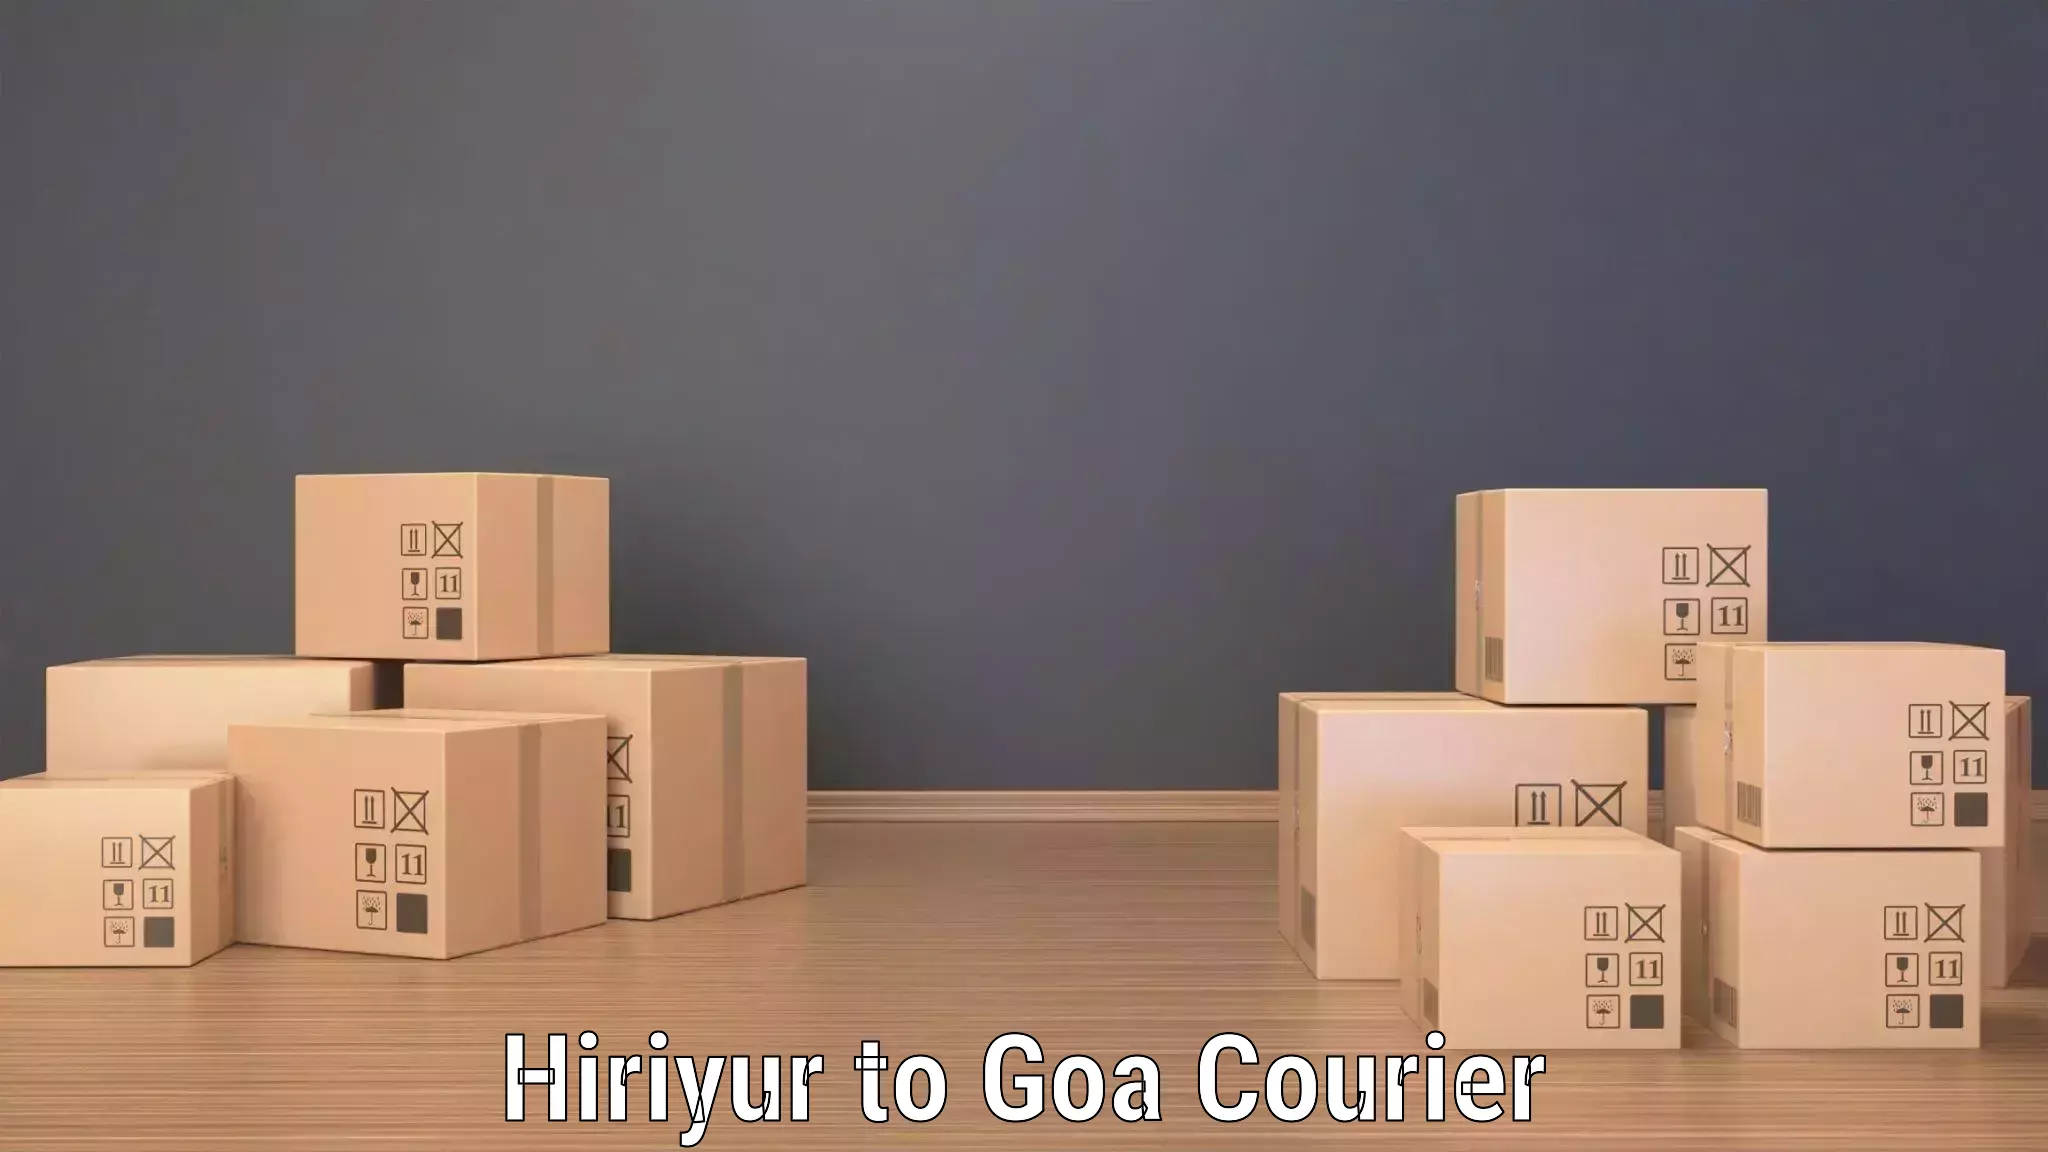 Full-service courier options Hiriyur to Panaji